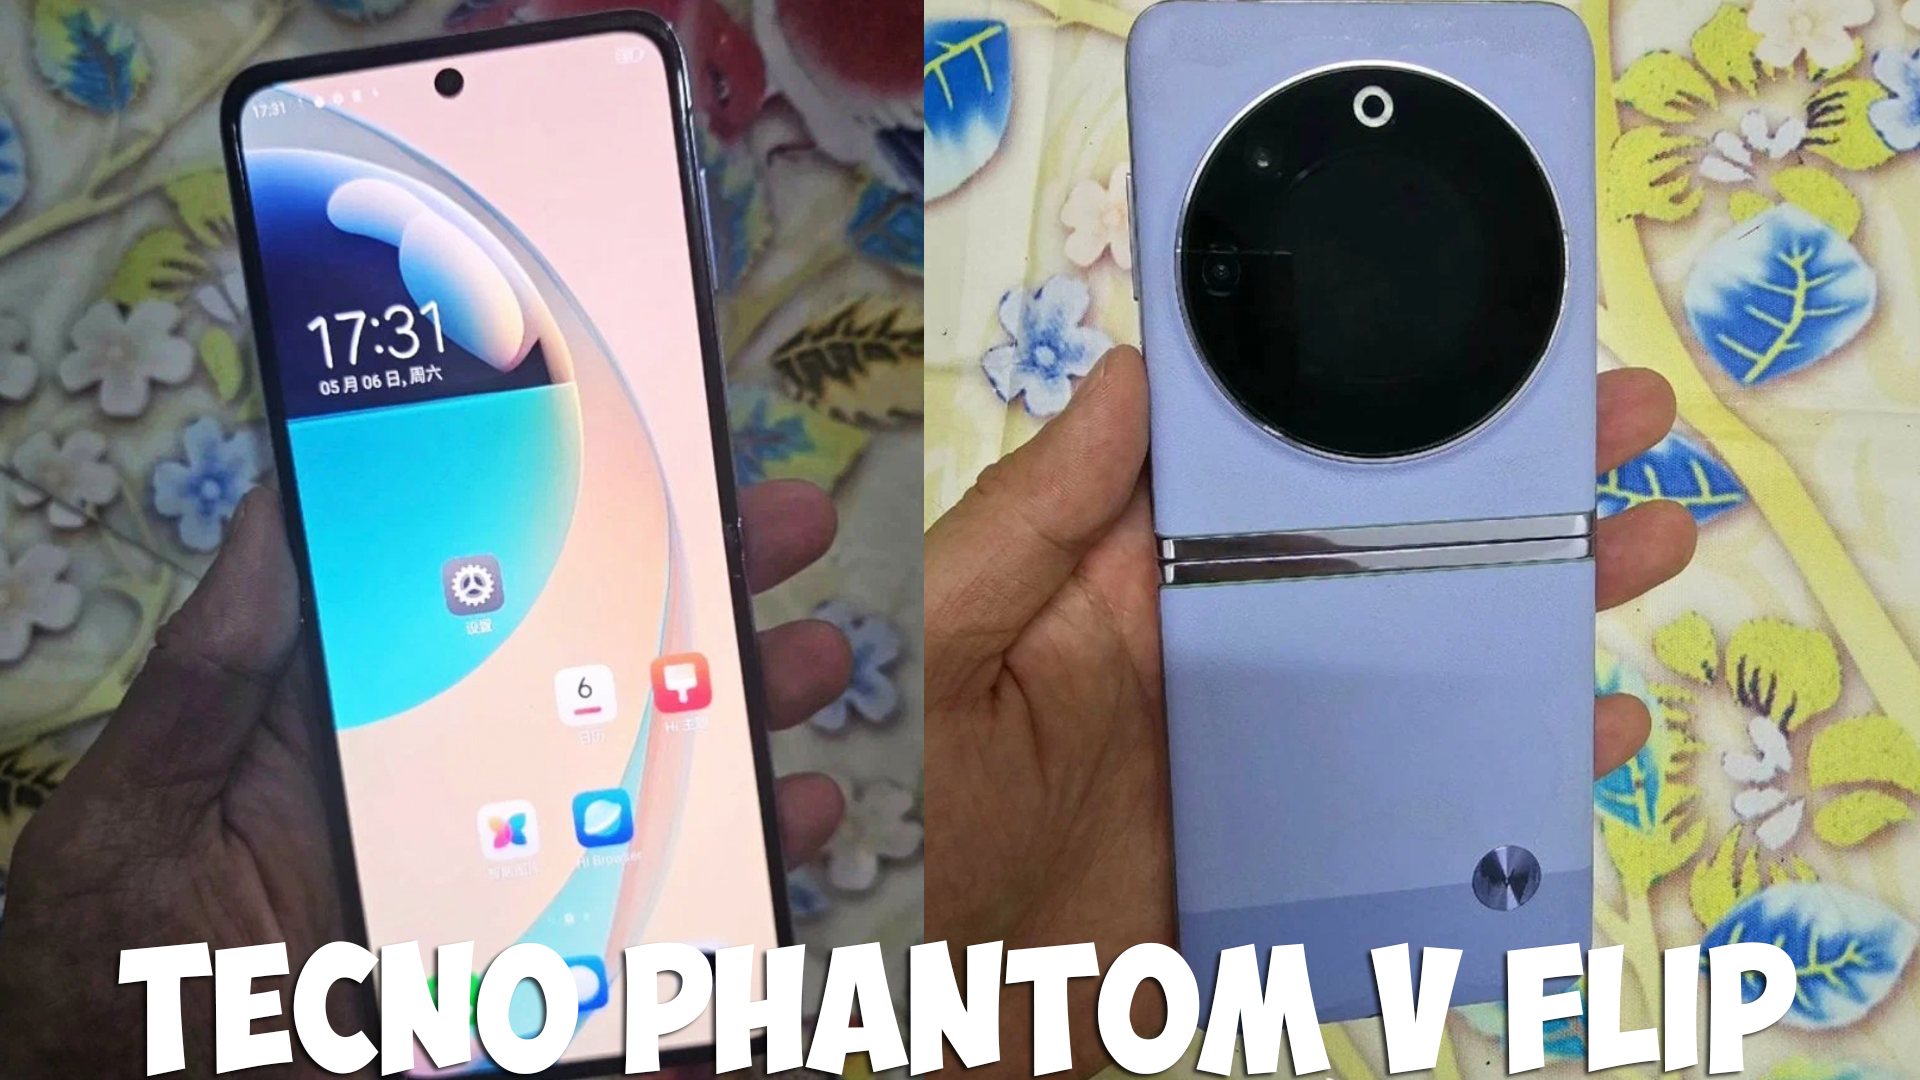 Phantom v flip 8